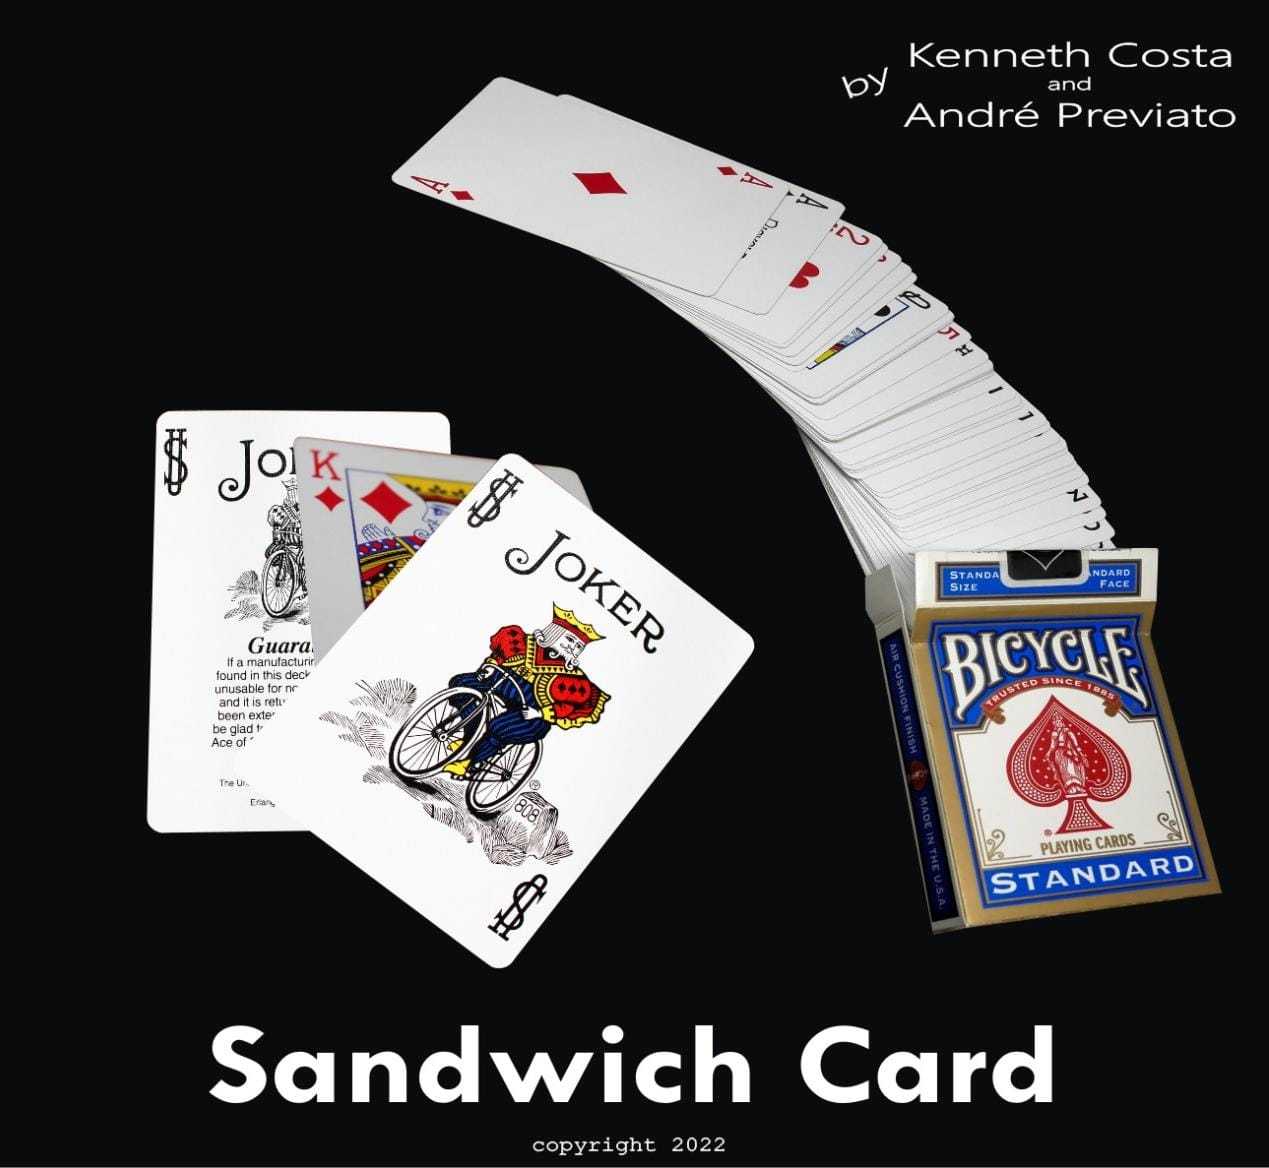 Kenneth Costa & Andre Previato - Sandwich Card